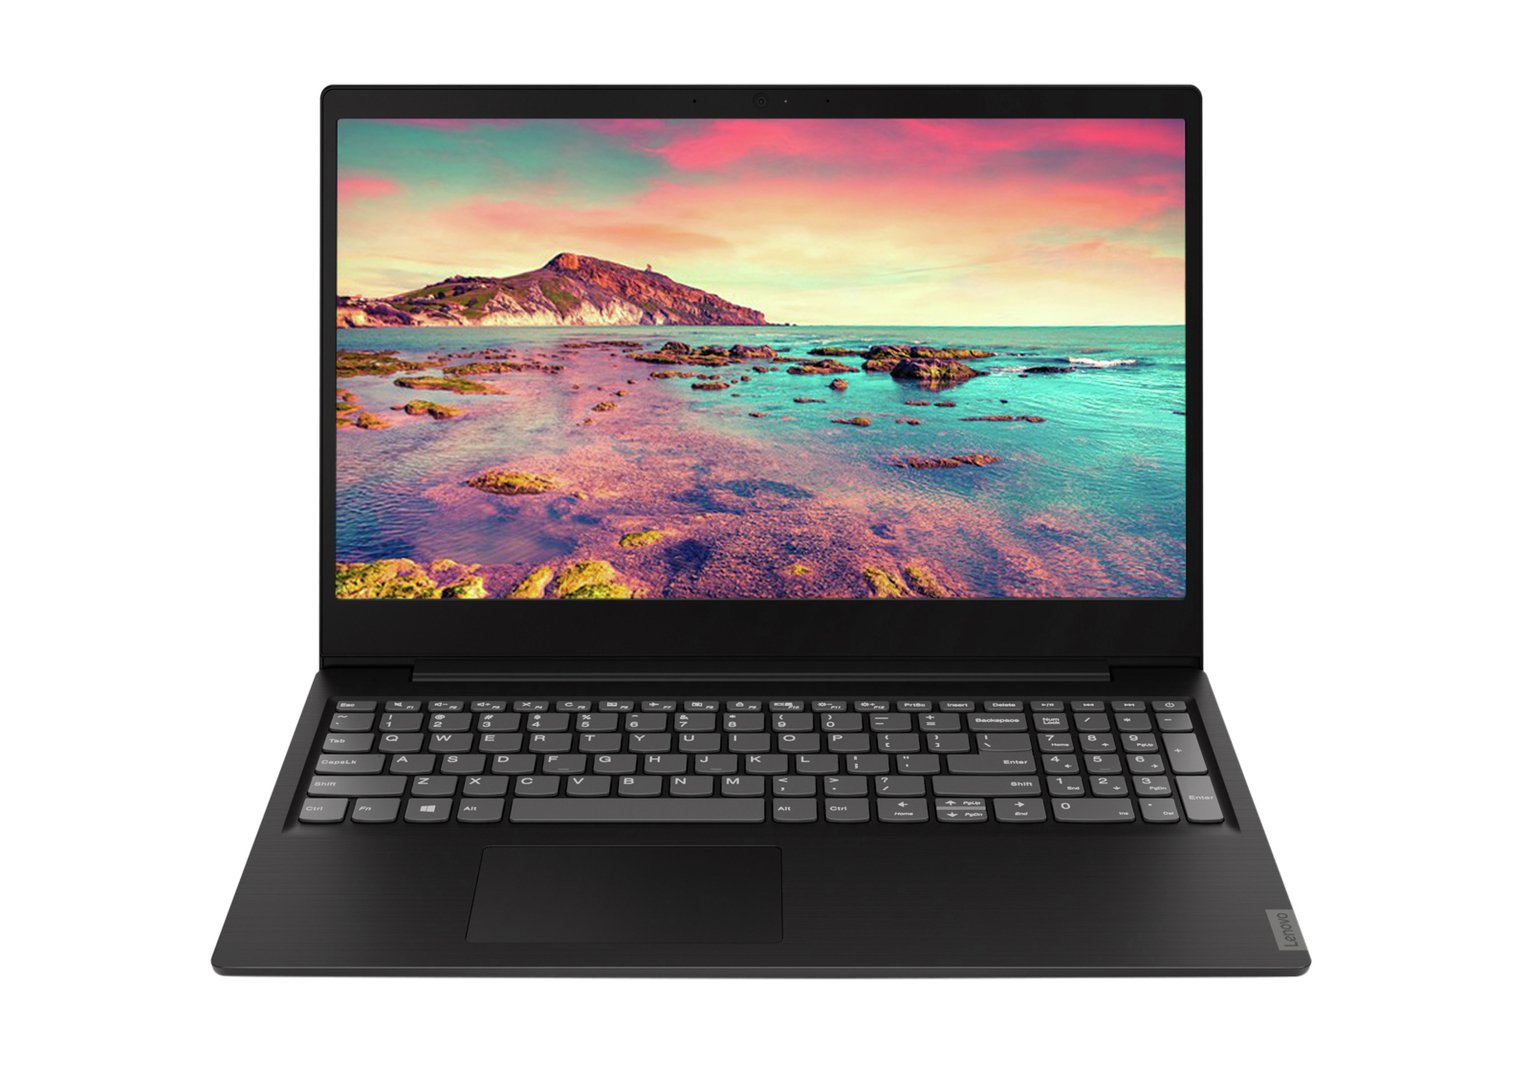 Lenovo IdeaPad S145 15.6in i3 4GB 128GB Laptop - Black